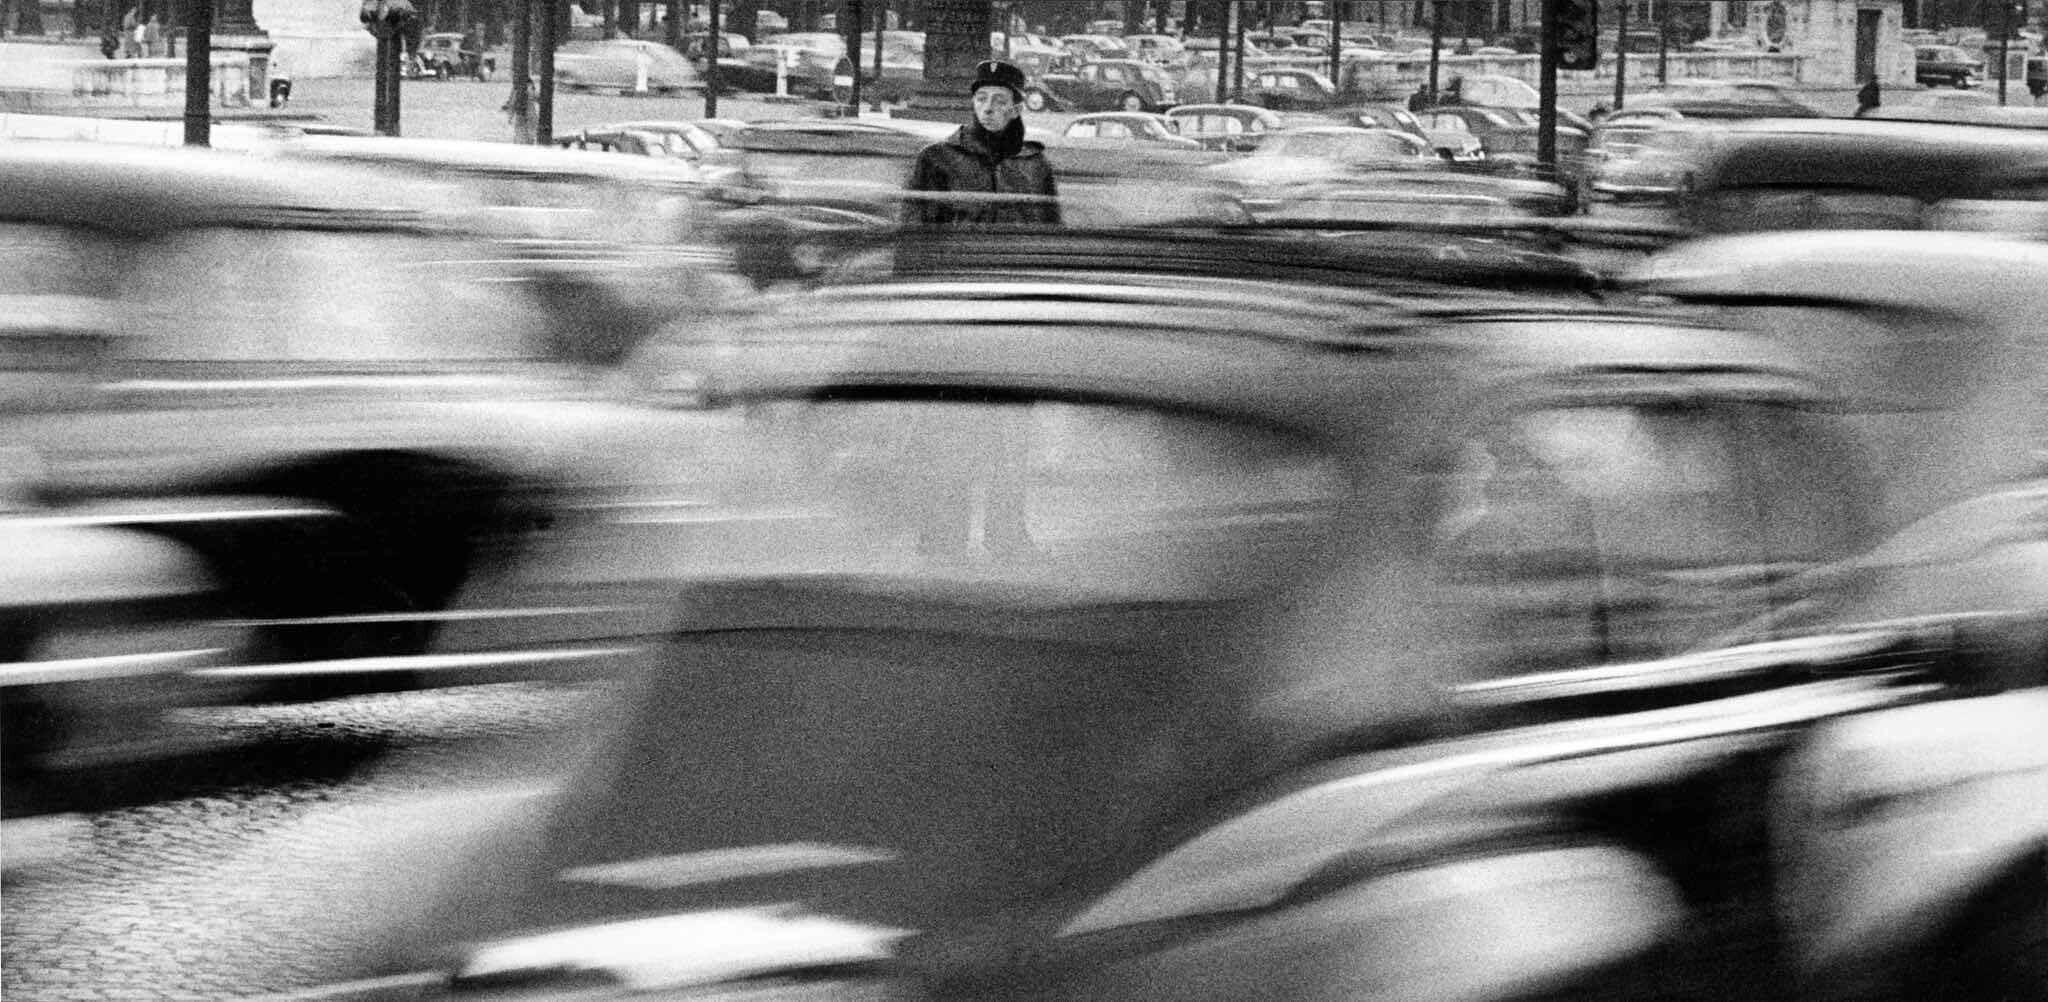 Париж, флик (французский полицейский) на площади Согласия, 1956 год. Фотограф Франк Хорват